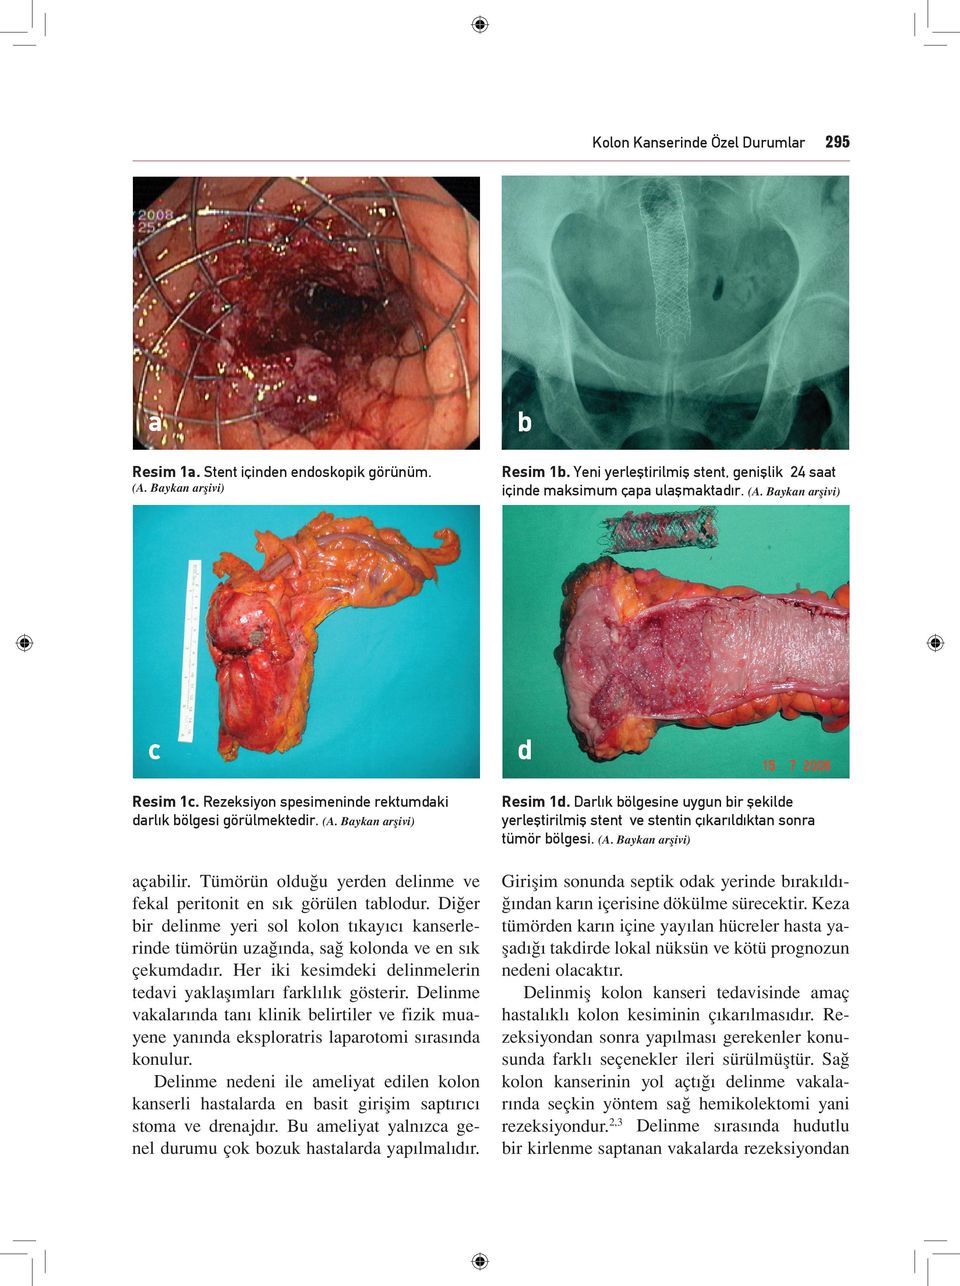 Tümörün olduğu yerden delinme ve fekal peritonit en sık görülen tablodur. Diğer bir delinme yeri sol kolon tıkayıcı kanserlerinde tümörün uzağında, sağ kolonda ve en sık çekumdadır.